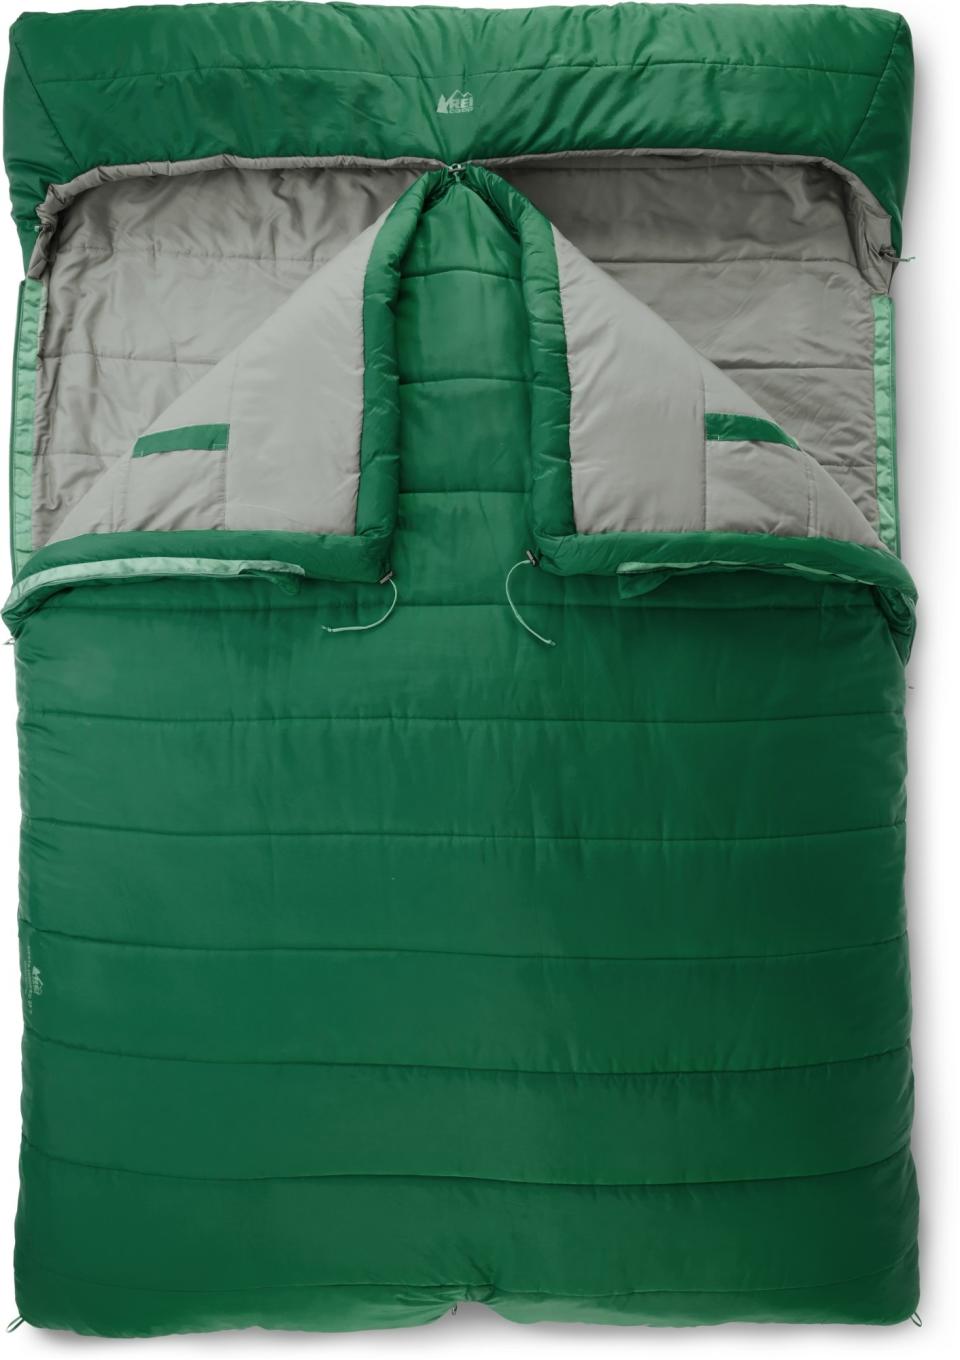 REI Co-op Siesta Hooded 25 Double Sleeping Bag